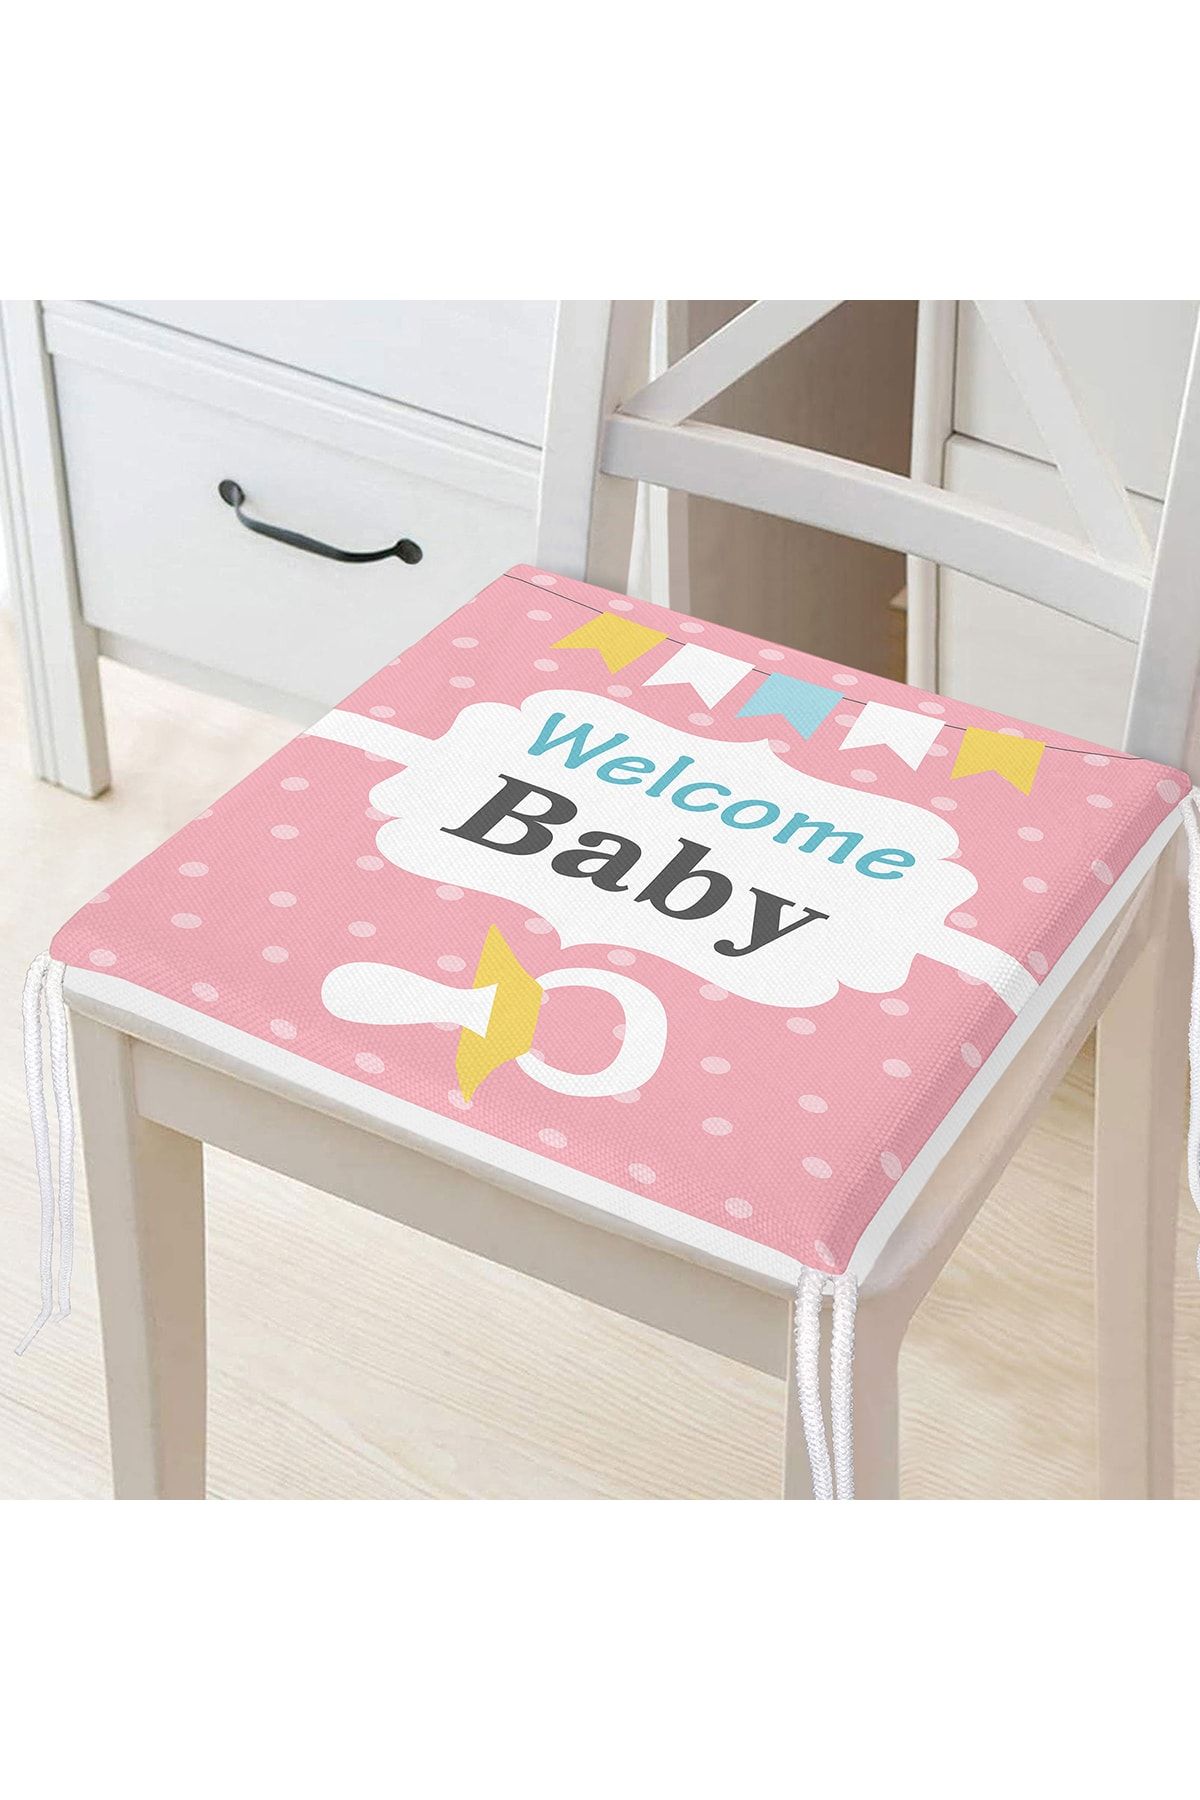 Realhomes Pembe Zemin Baby Shower Temalı Özel Tasarımlı Dijital Baskılı Çocuk Odası Fermuarlı Sandalye Minderi